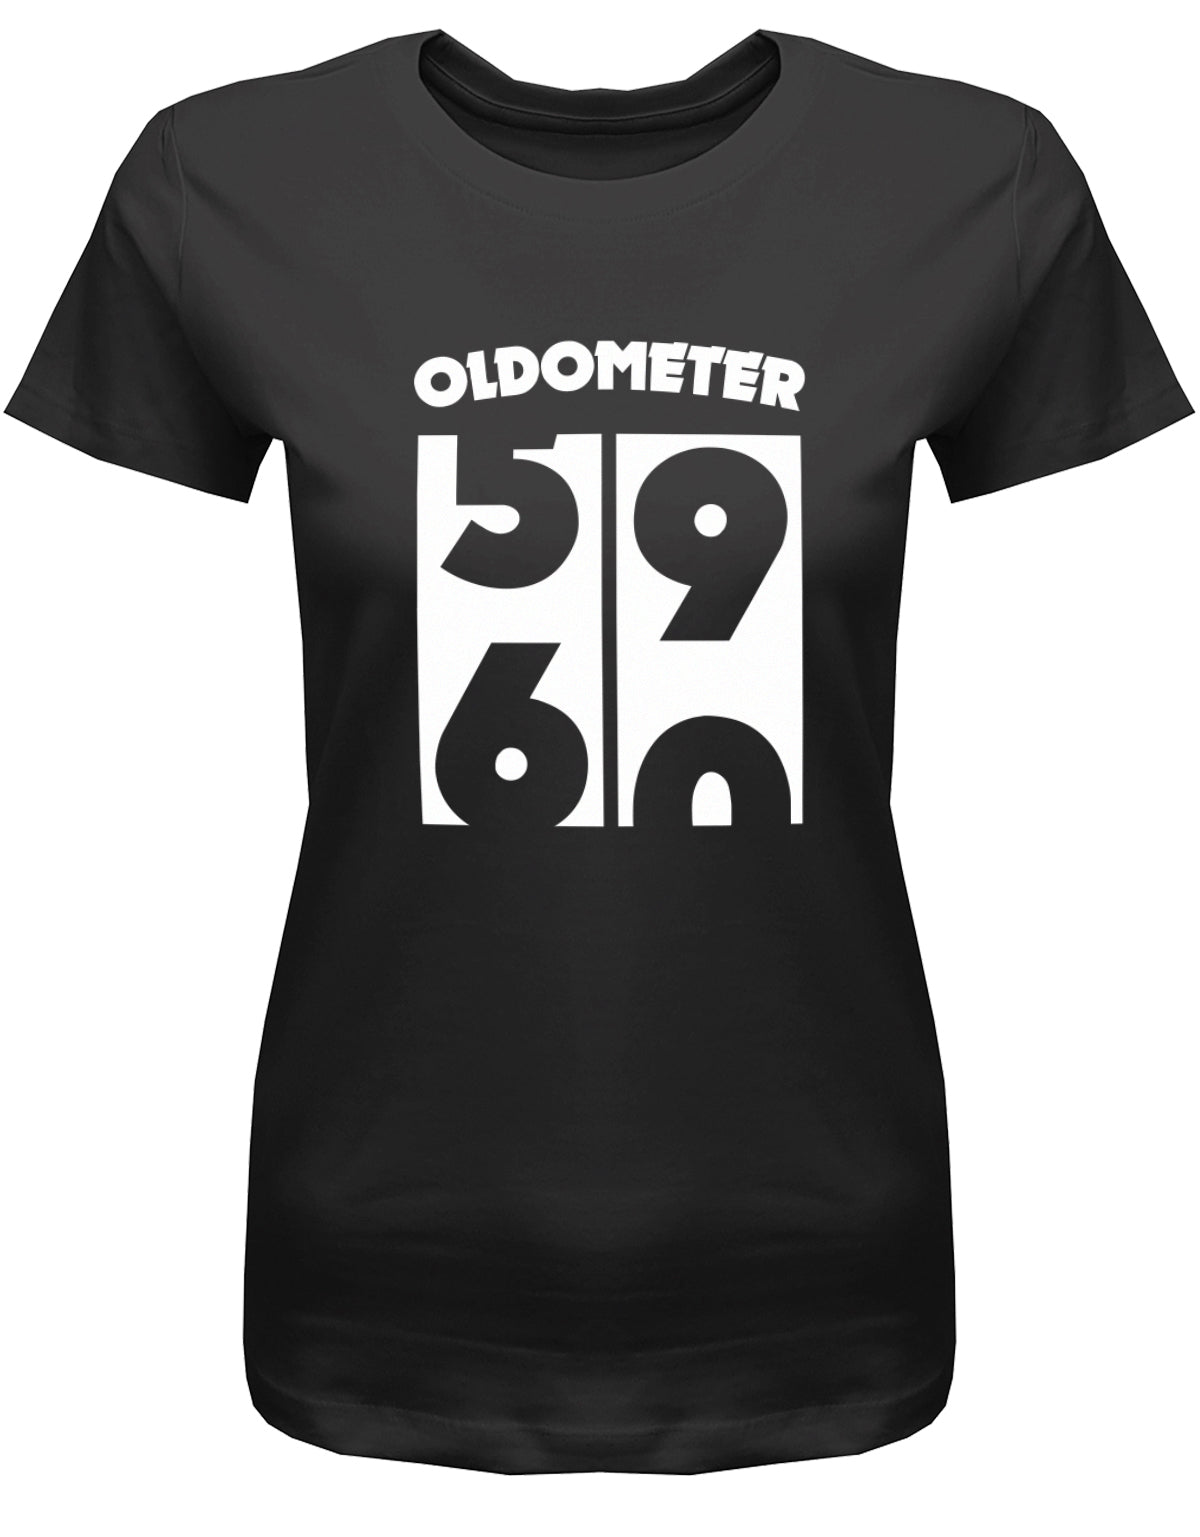 Lustiges T-Shirt zum 60 Geburtstag für die Frau Bedruckt mit Oldometer Wechsel von 59 zu 60 Jahren. SChwarz